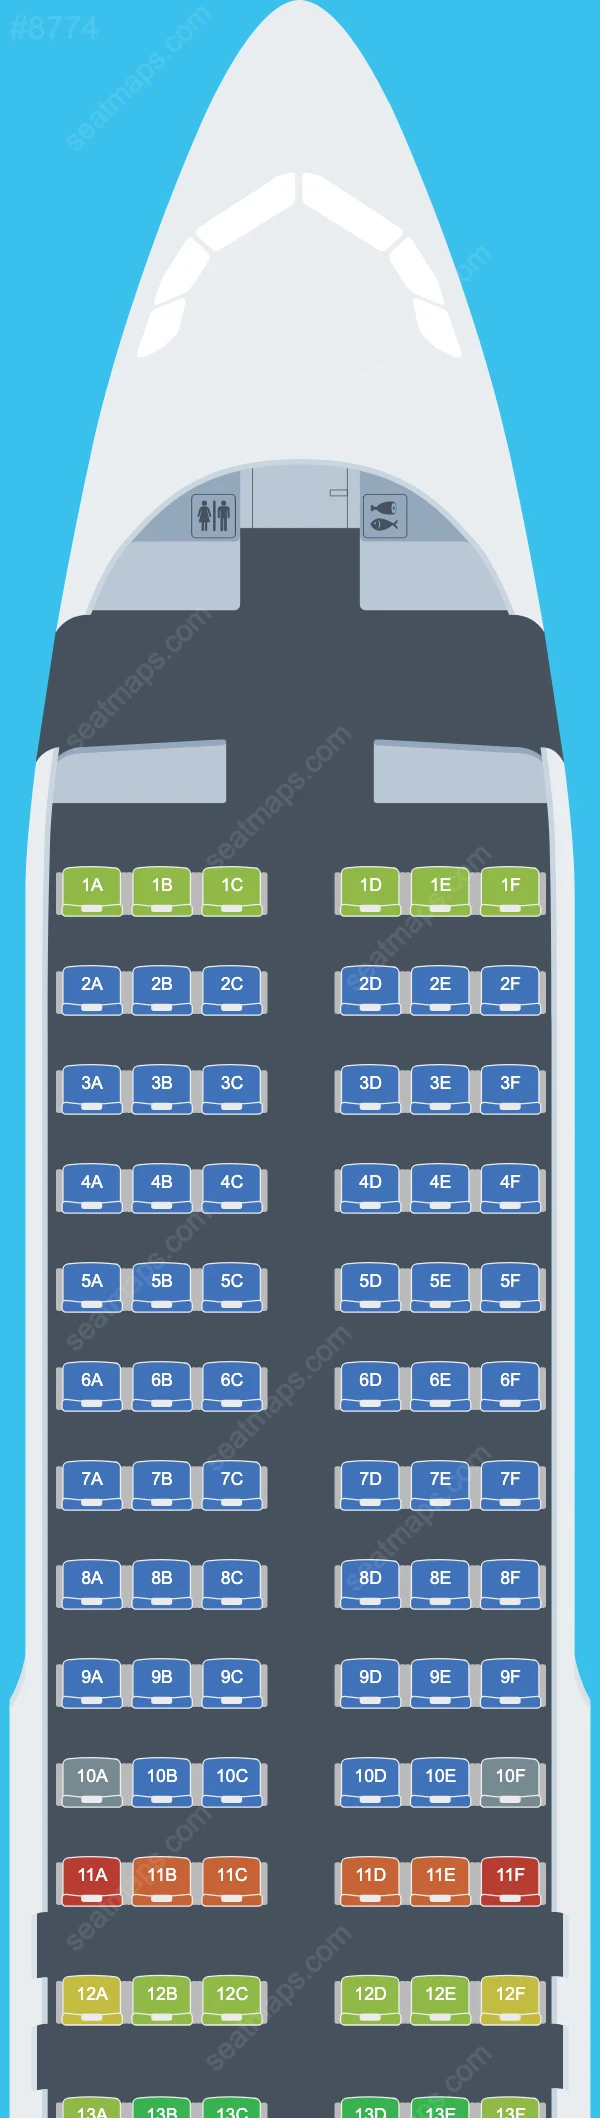 SundAir Airbus A320 Seat Maps A320-200